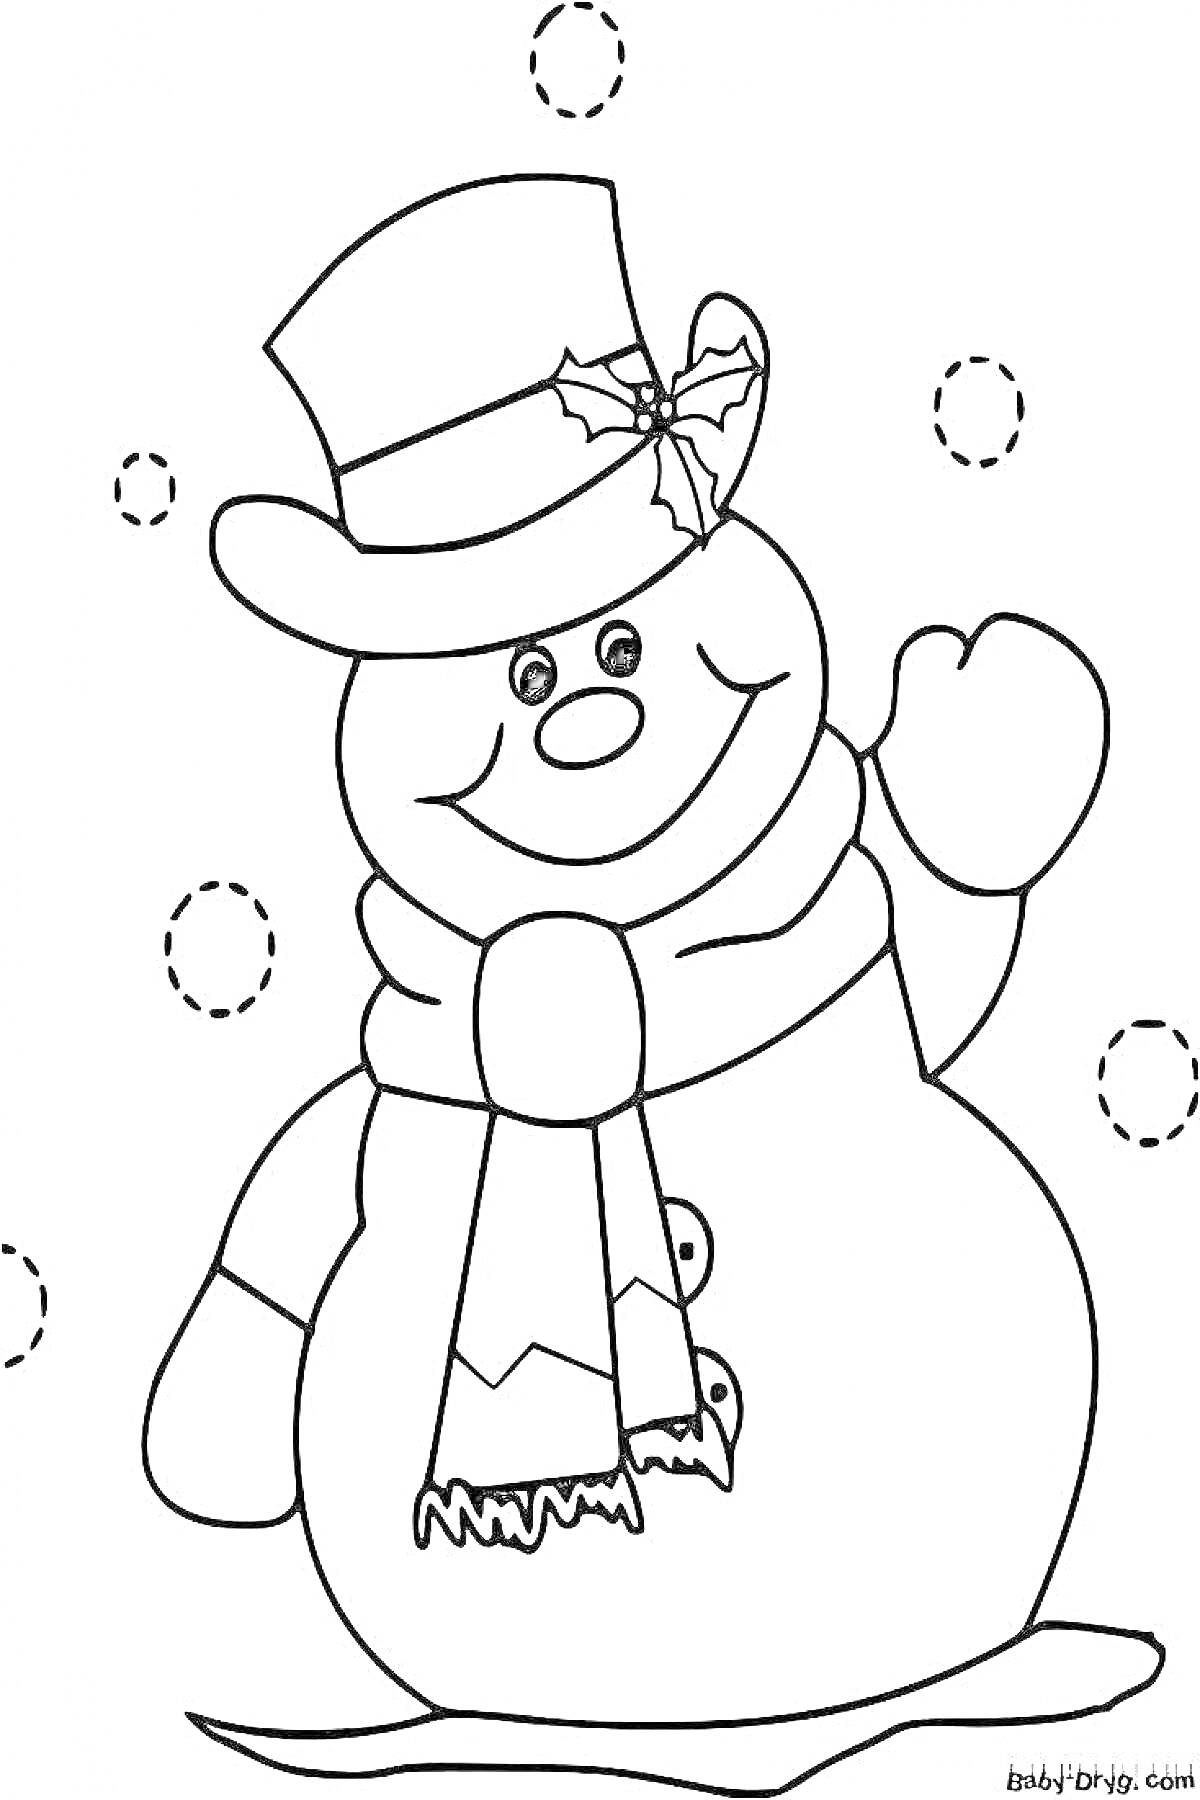 Раскраска Снеговик с шапкой, шарфом и пуговицами на фоне снежинок